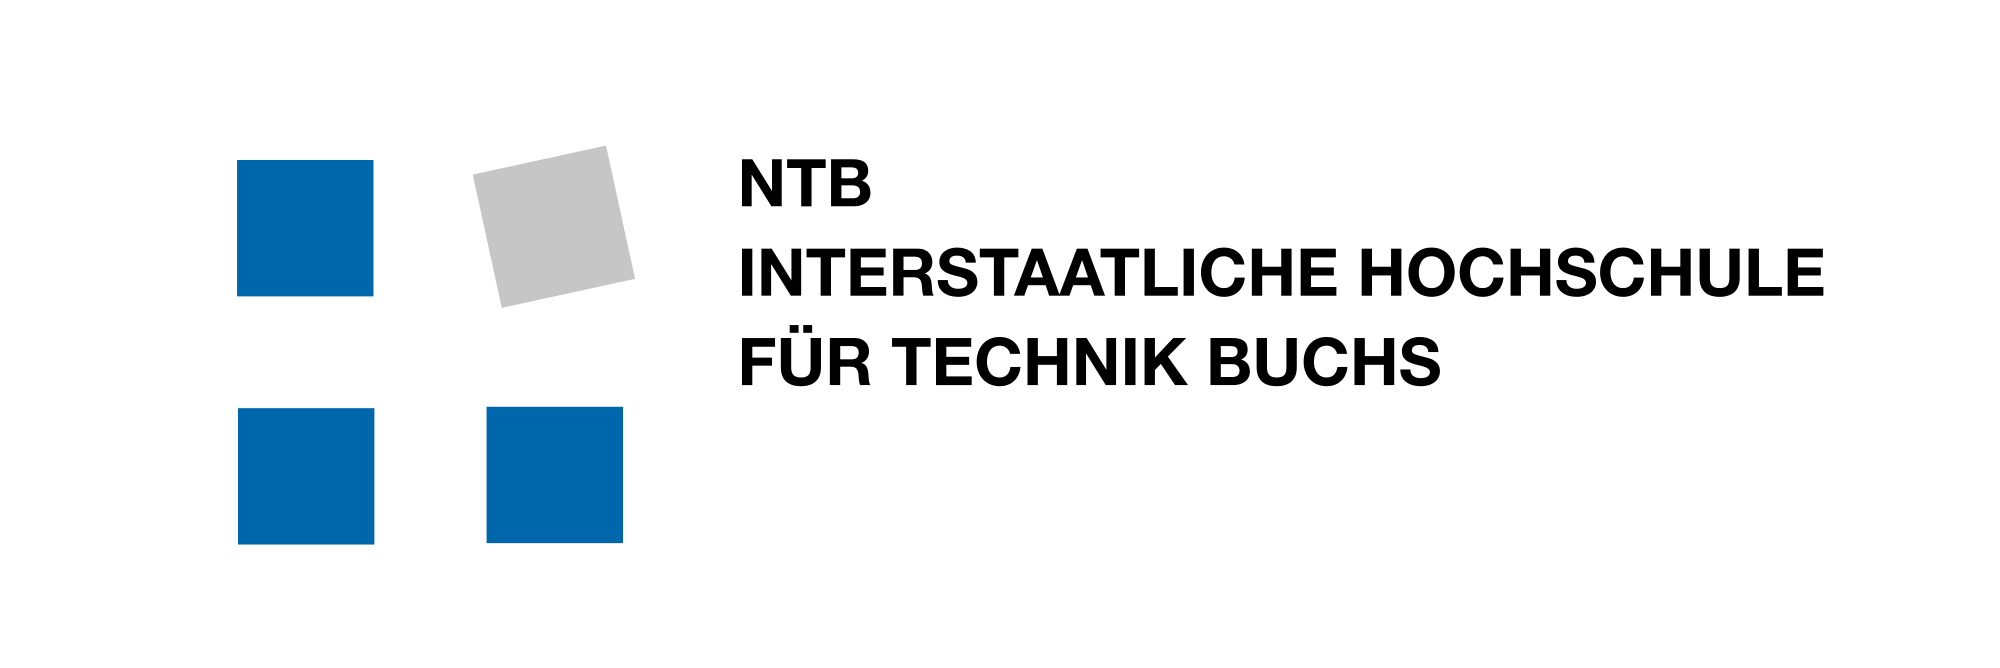 NTB Logo - File:NTB LOGO CMYK blau grau.svg - Wikimedia Commons